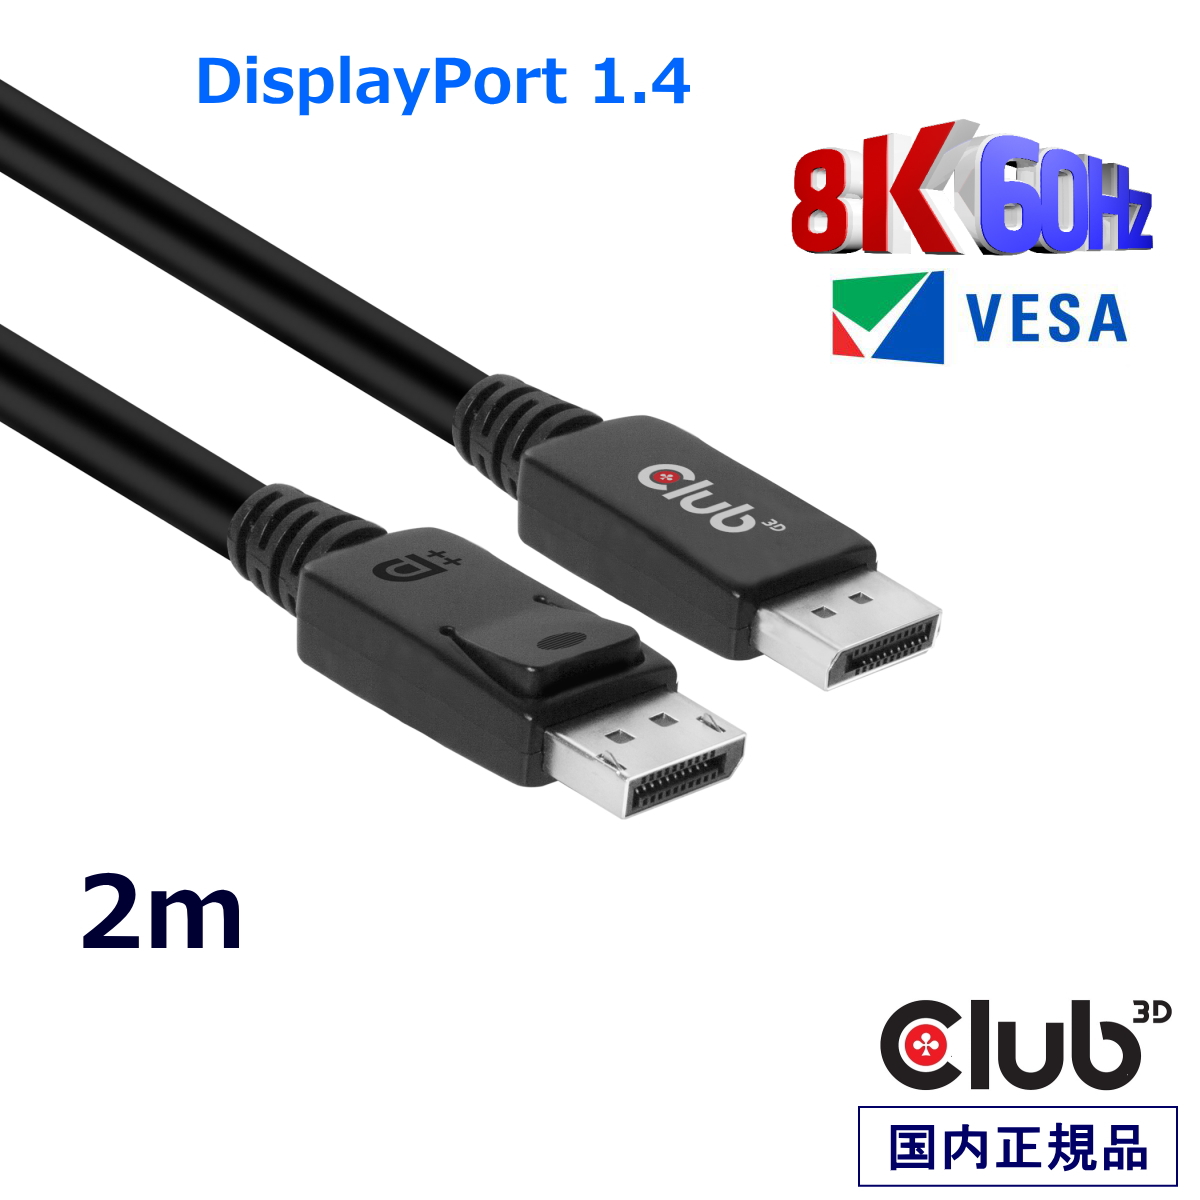 ゲーミングモニター 240Hz に対応 VESA認証 DisplayPort ケーブル 国内正規品 Club3D 1.4 28AWG 60Hz 2m HBR3 Cable 誕生日プレゼント ディスプレイ CAC-2068 8K Male メーカー再生品